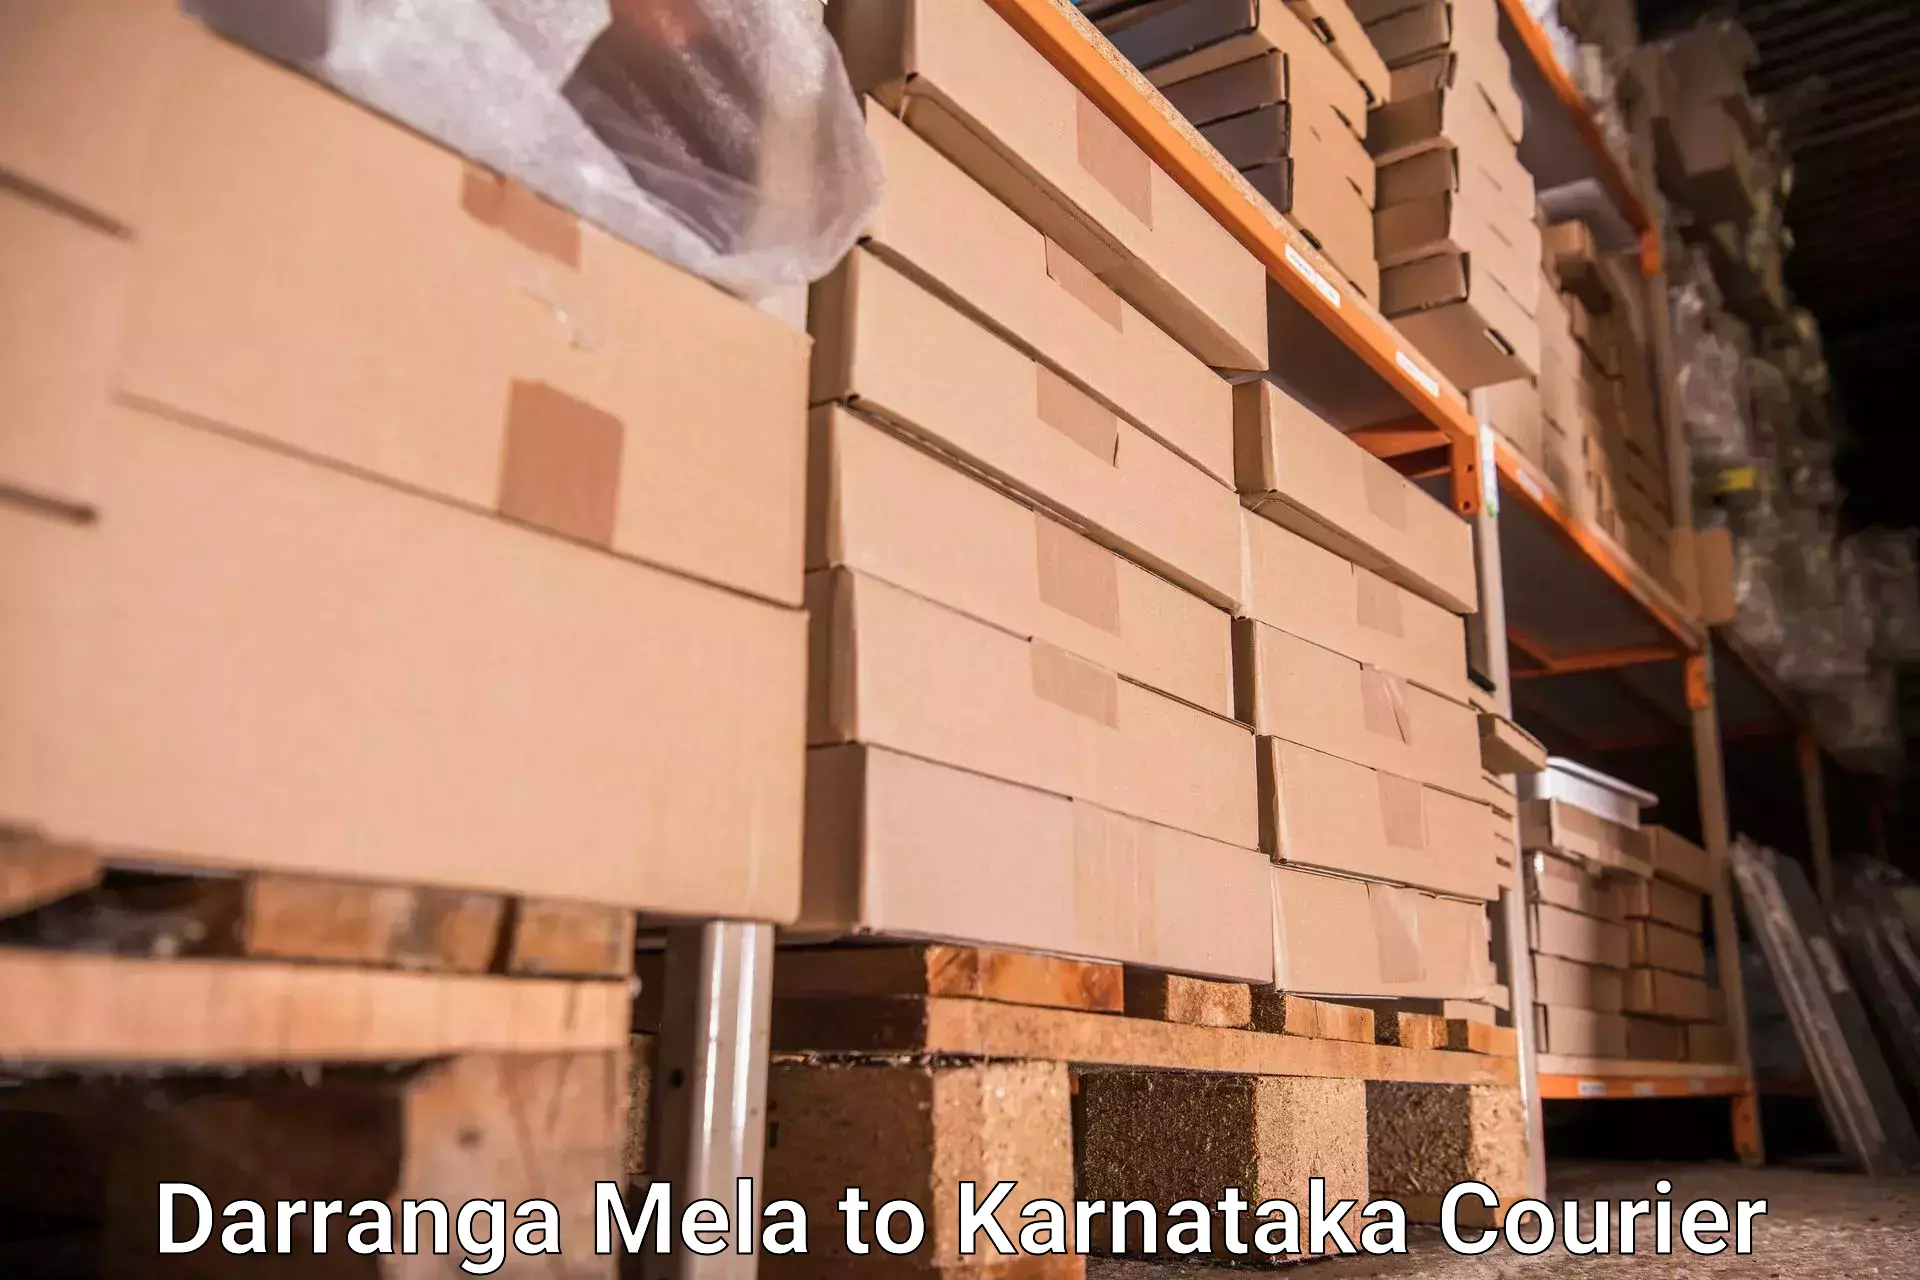 Reliable luggage courier Darranga Mela to Chikkaballapur